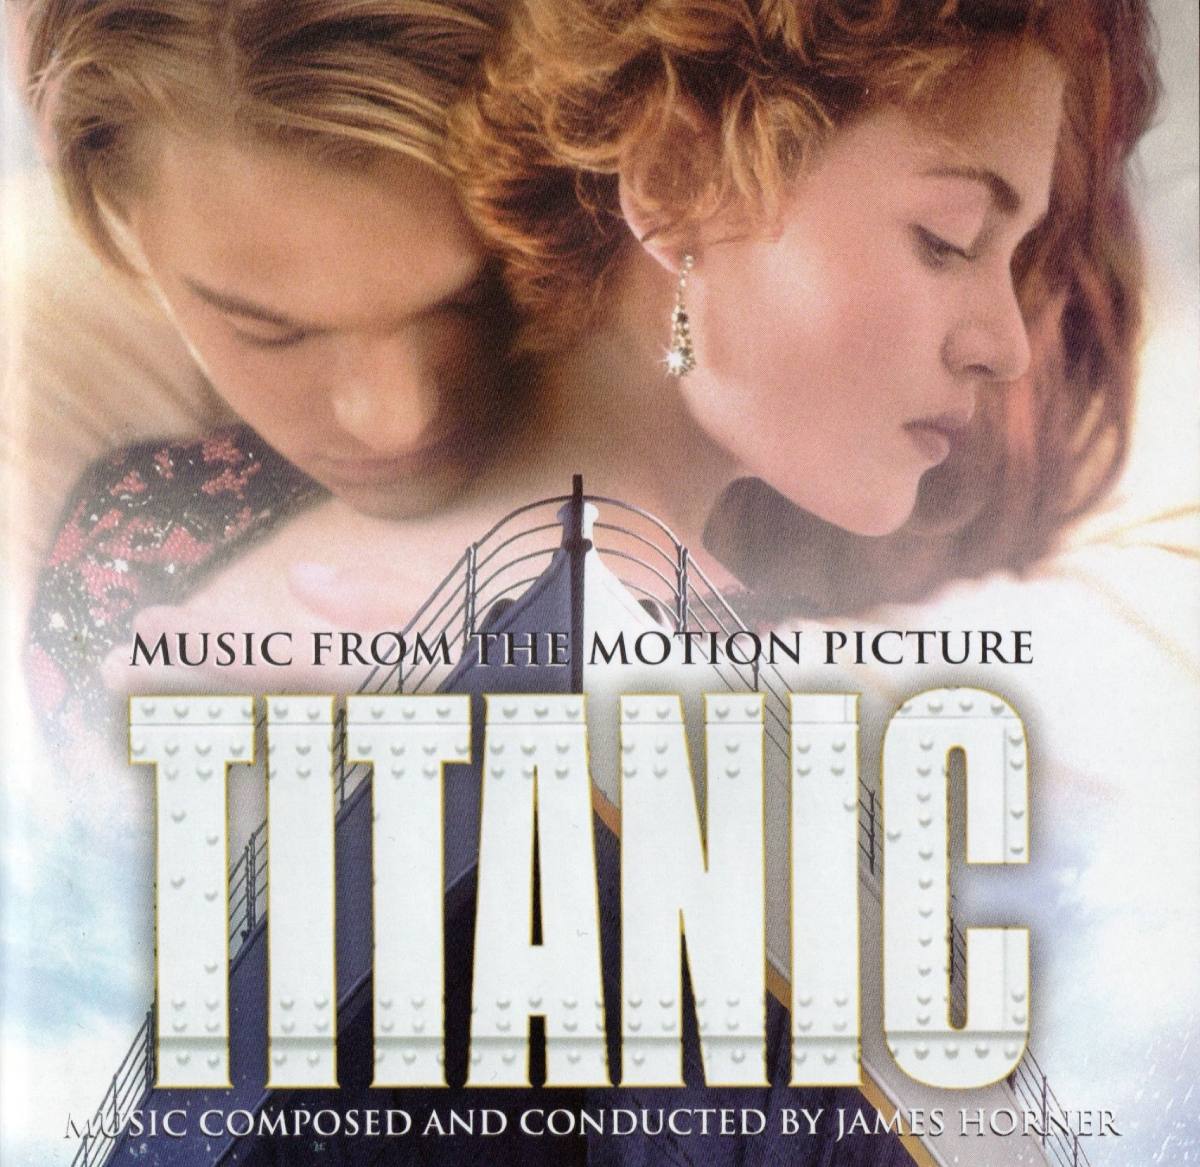 Titanic (Титаник)